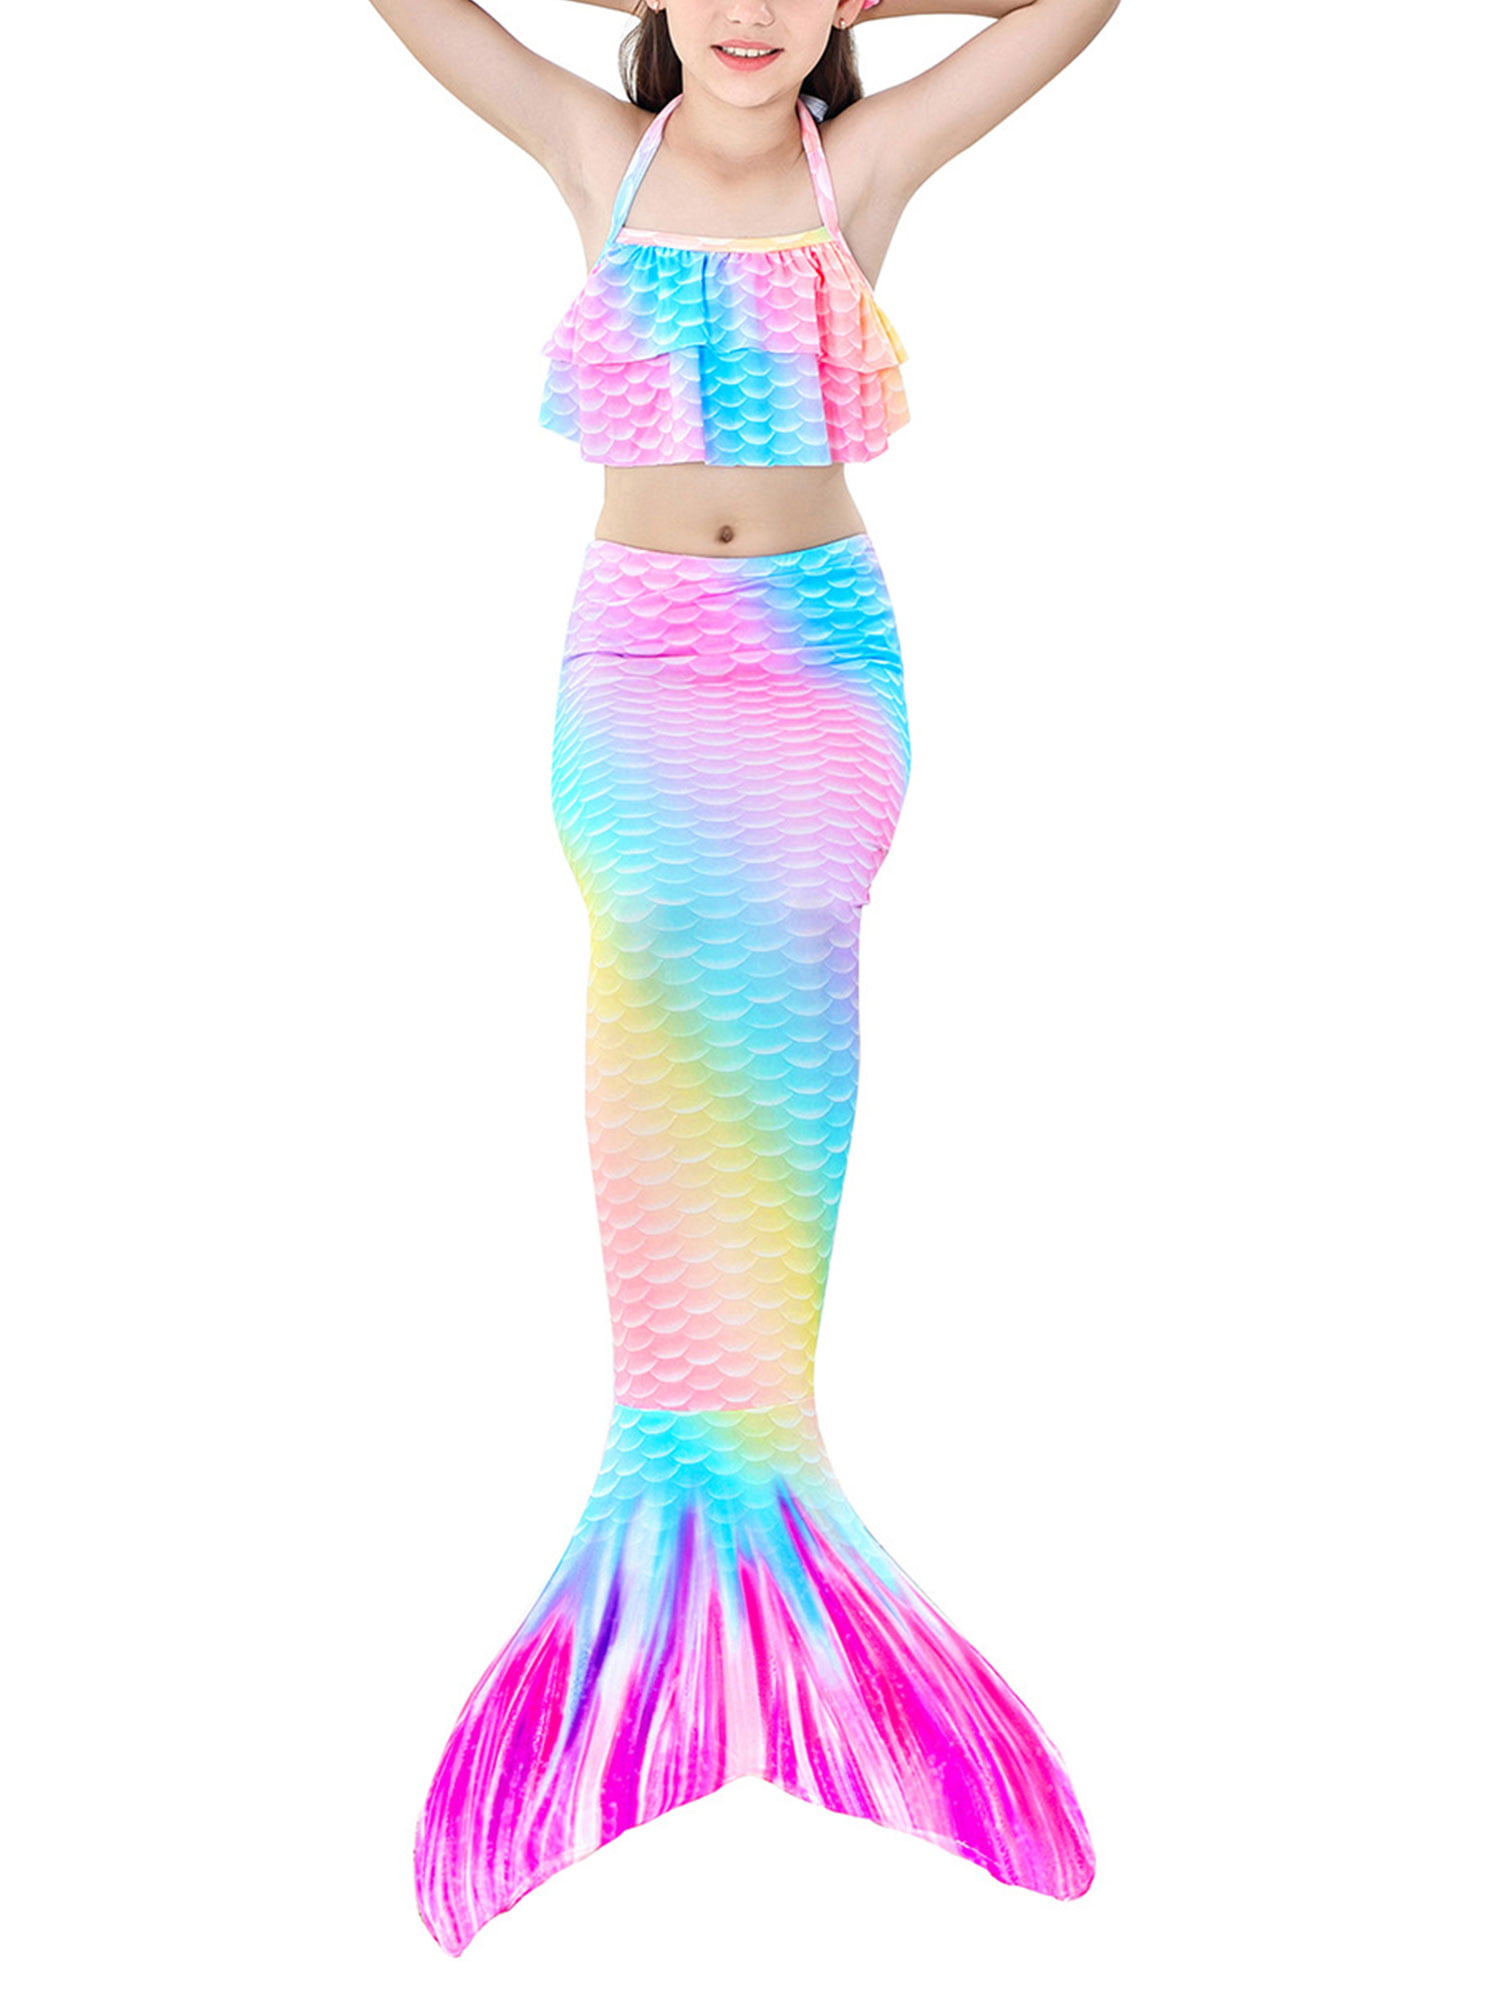 Kids Mermaid Tail with Monofin Swimming Bikini Set Costume Safety Equipment 